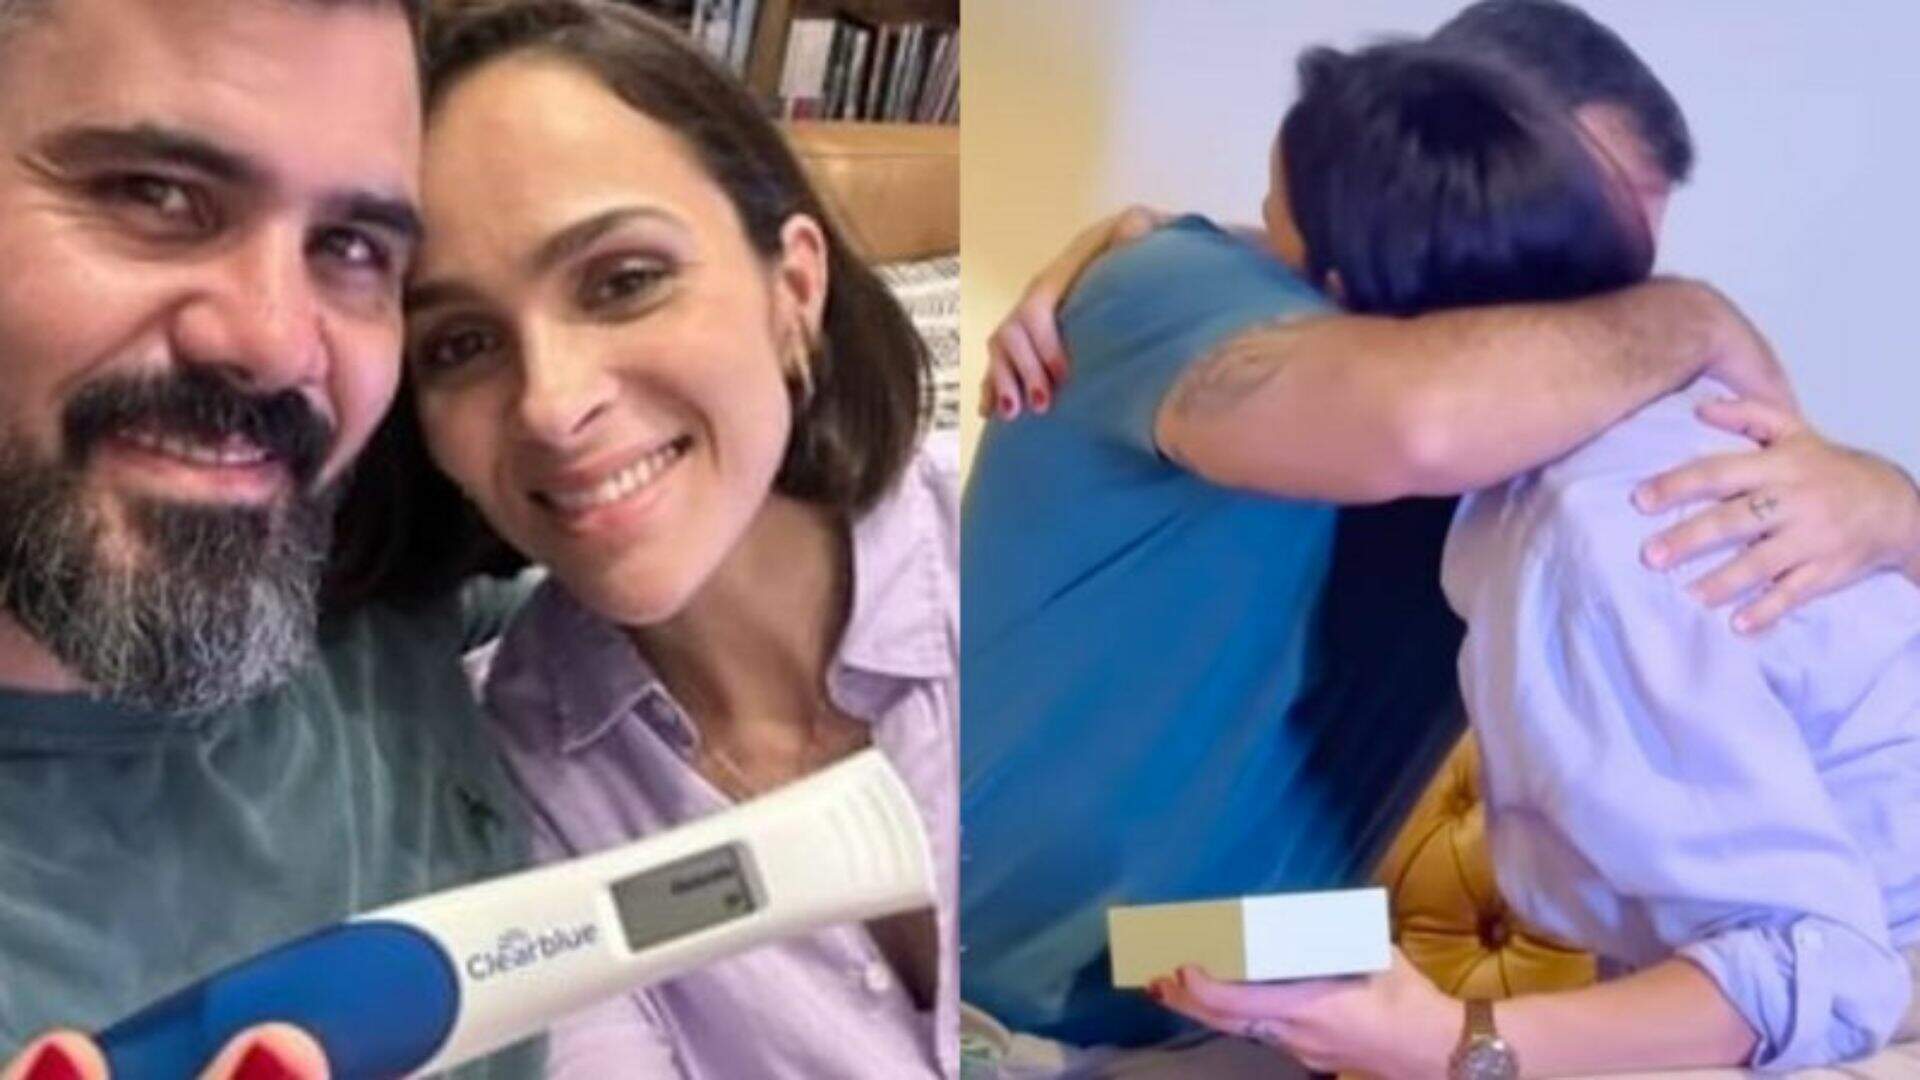 Juliano Cazarré e Leticia revelam nova gravidez: “Agora somos oito” - Metropolitana FM